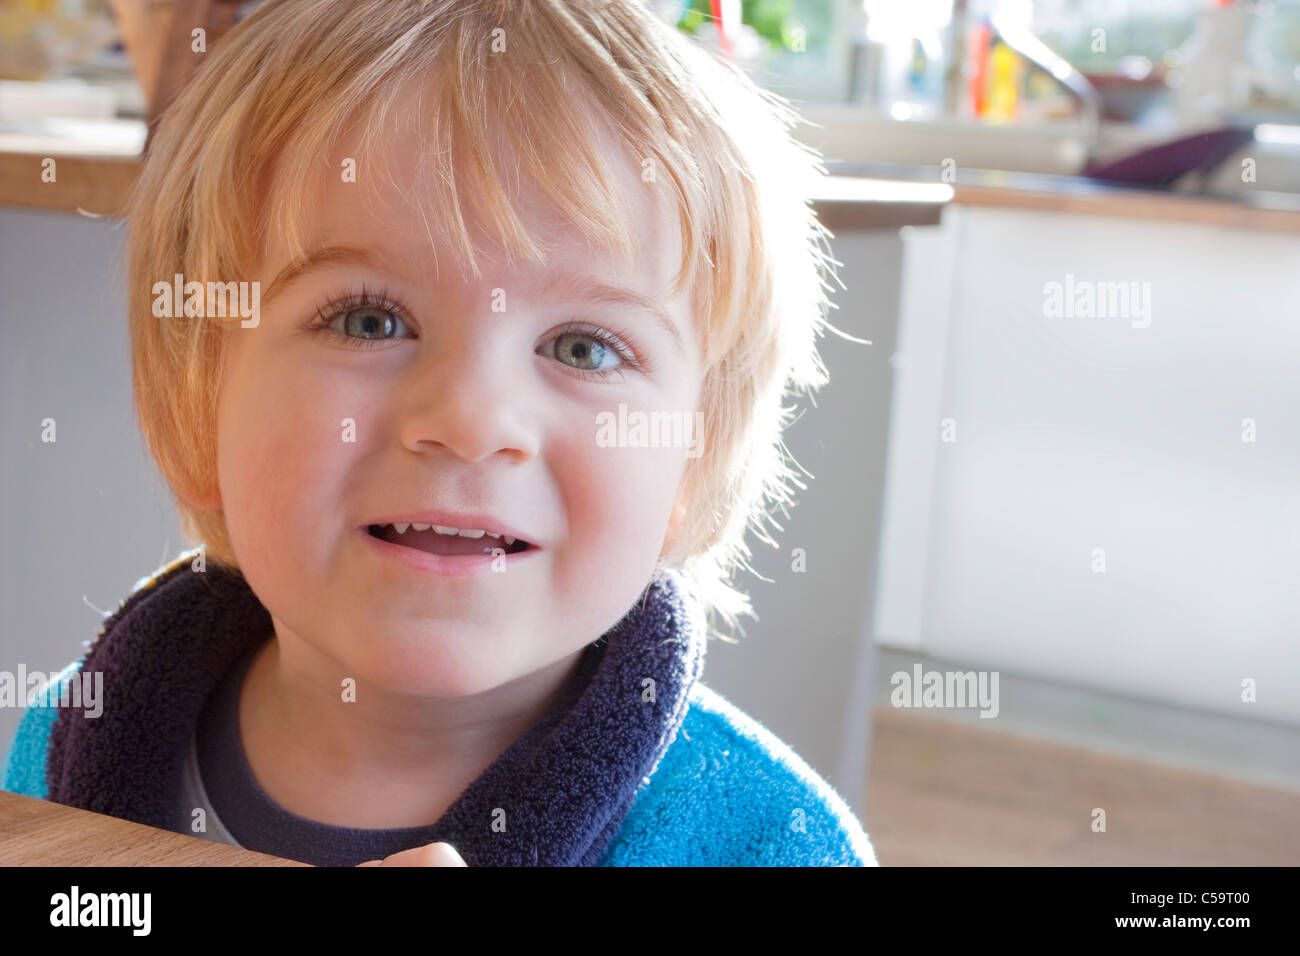 Close up of little boy smiling in La cuisine Banque D'Images